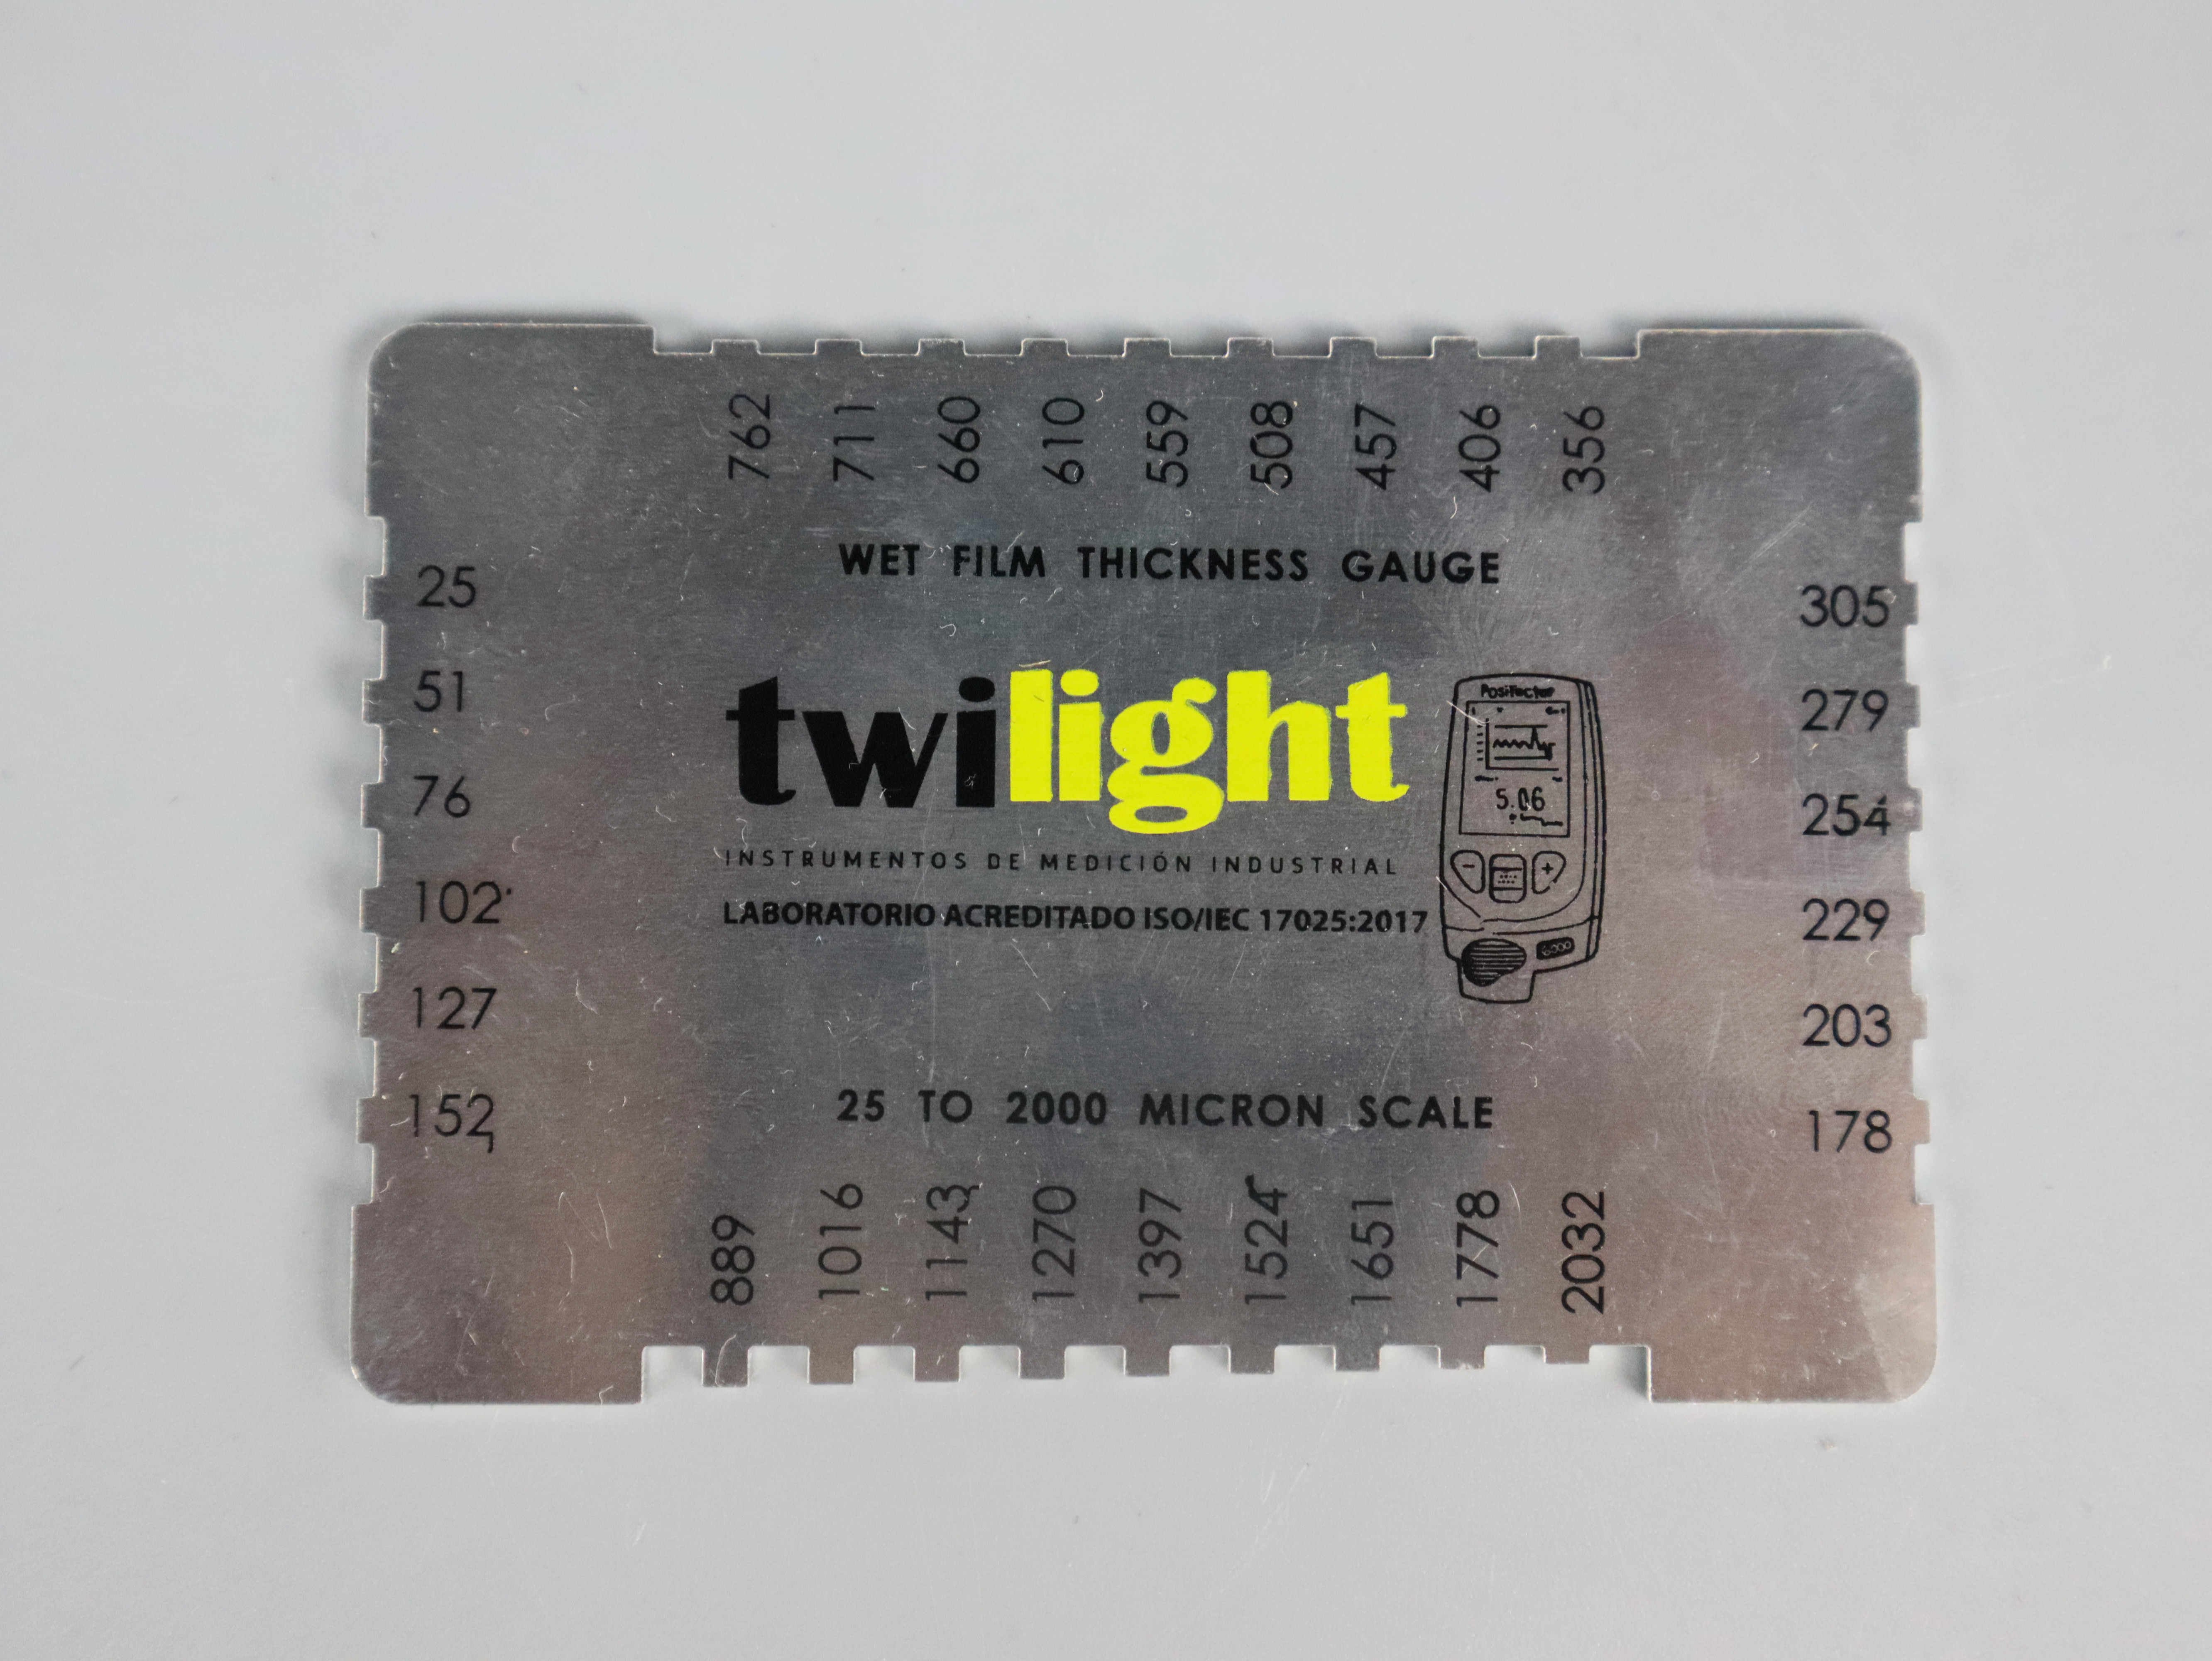 ZH-WFGR-35-peine-de-espesor-hu-medo-de-aluminio-logotipo-twilight-rango-1-80-mils-zh-jpg